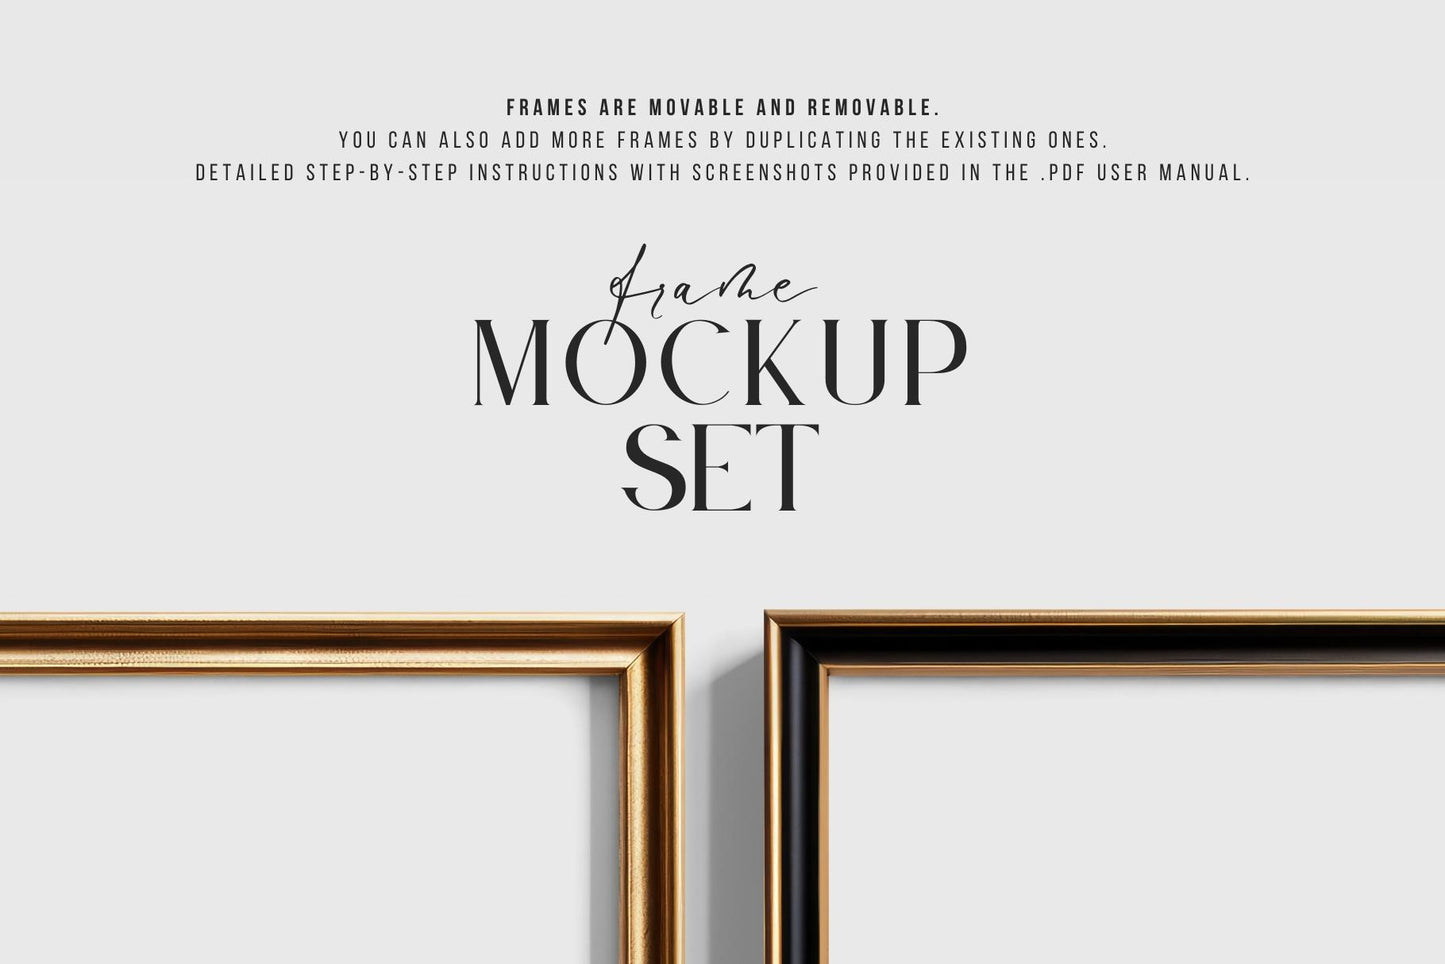 Metallic Frame Mockup Set of 2 Vertical Frames 5:7 | Elegant Black and Gold Frame Mockup Set | PSD Template + Transparent PNG Files